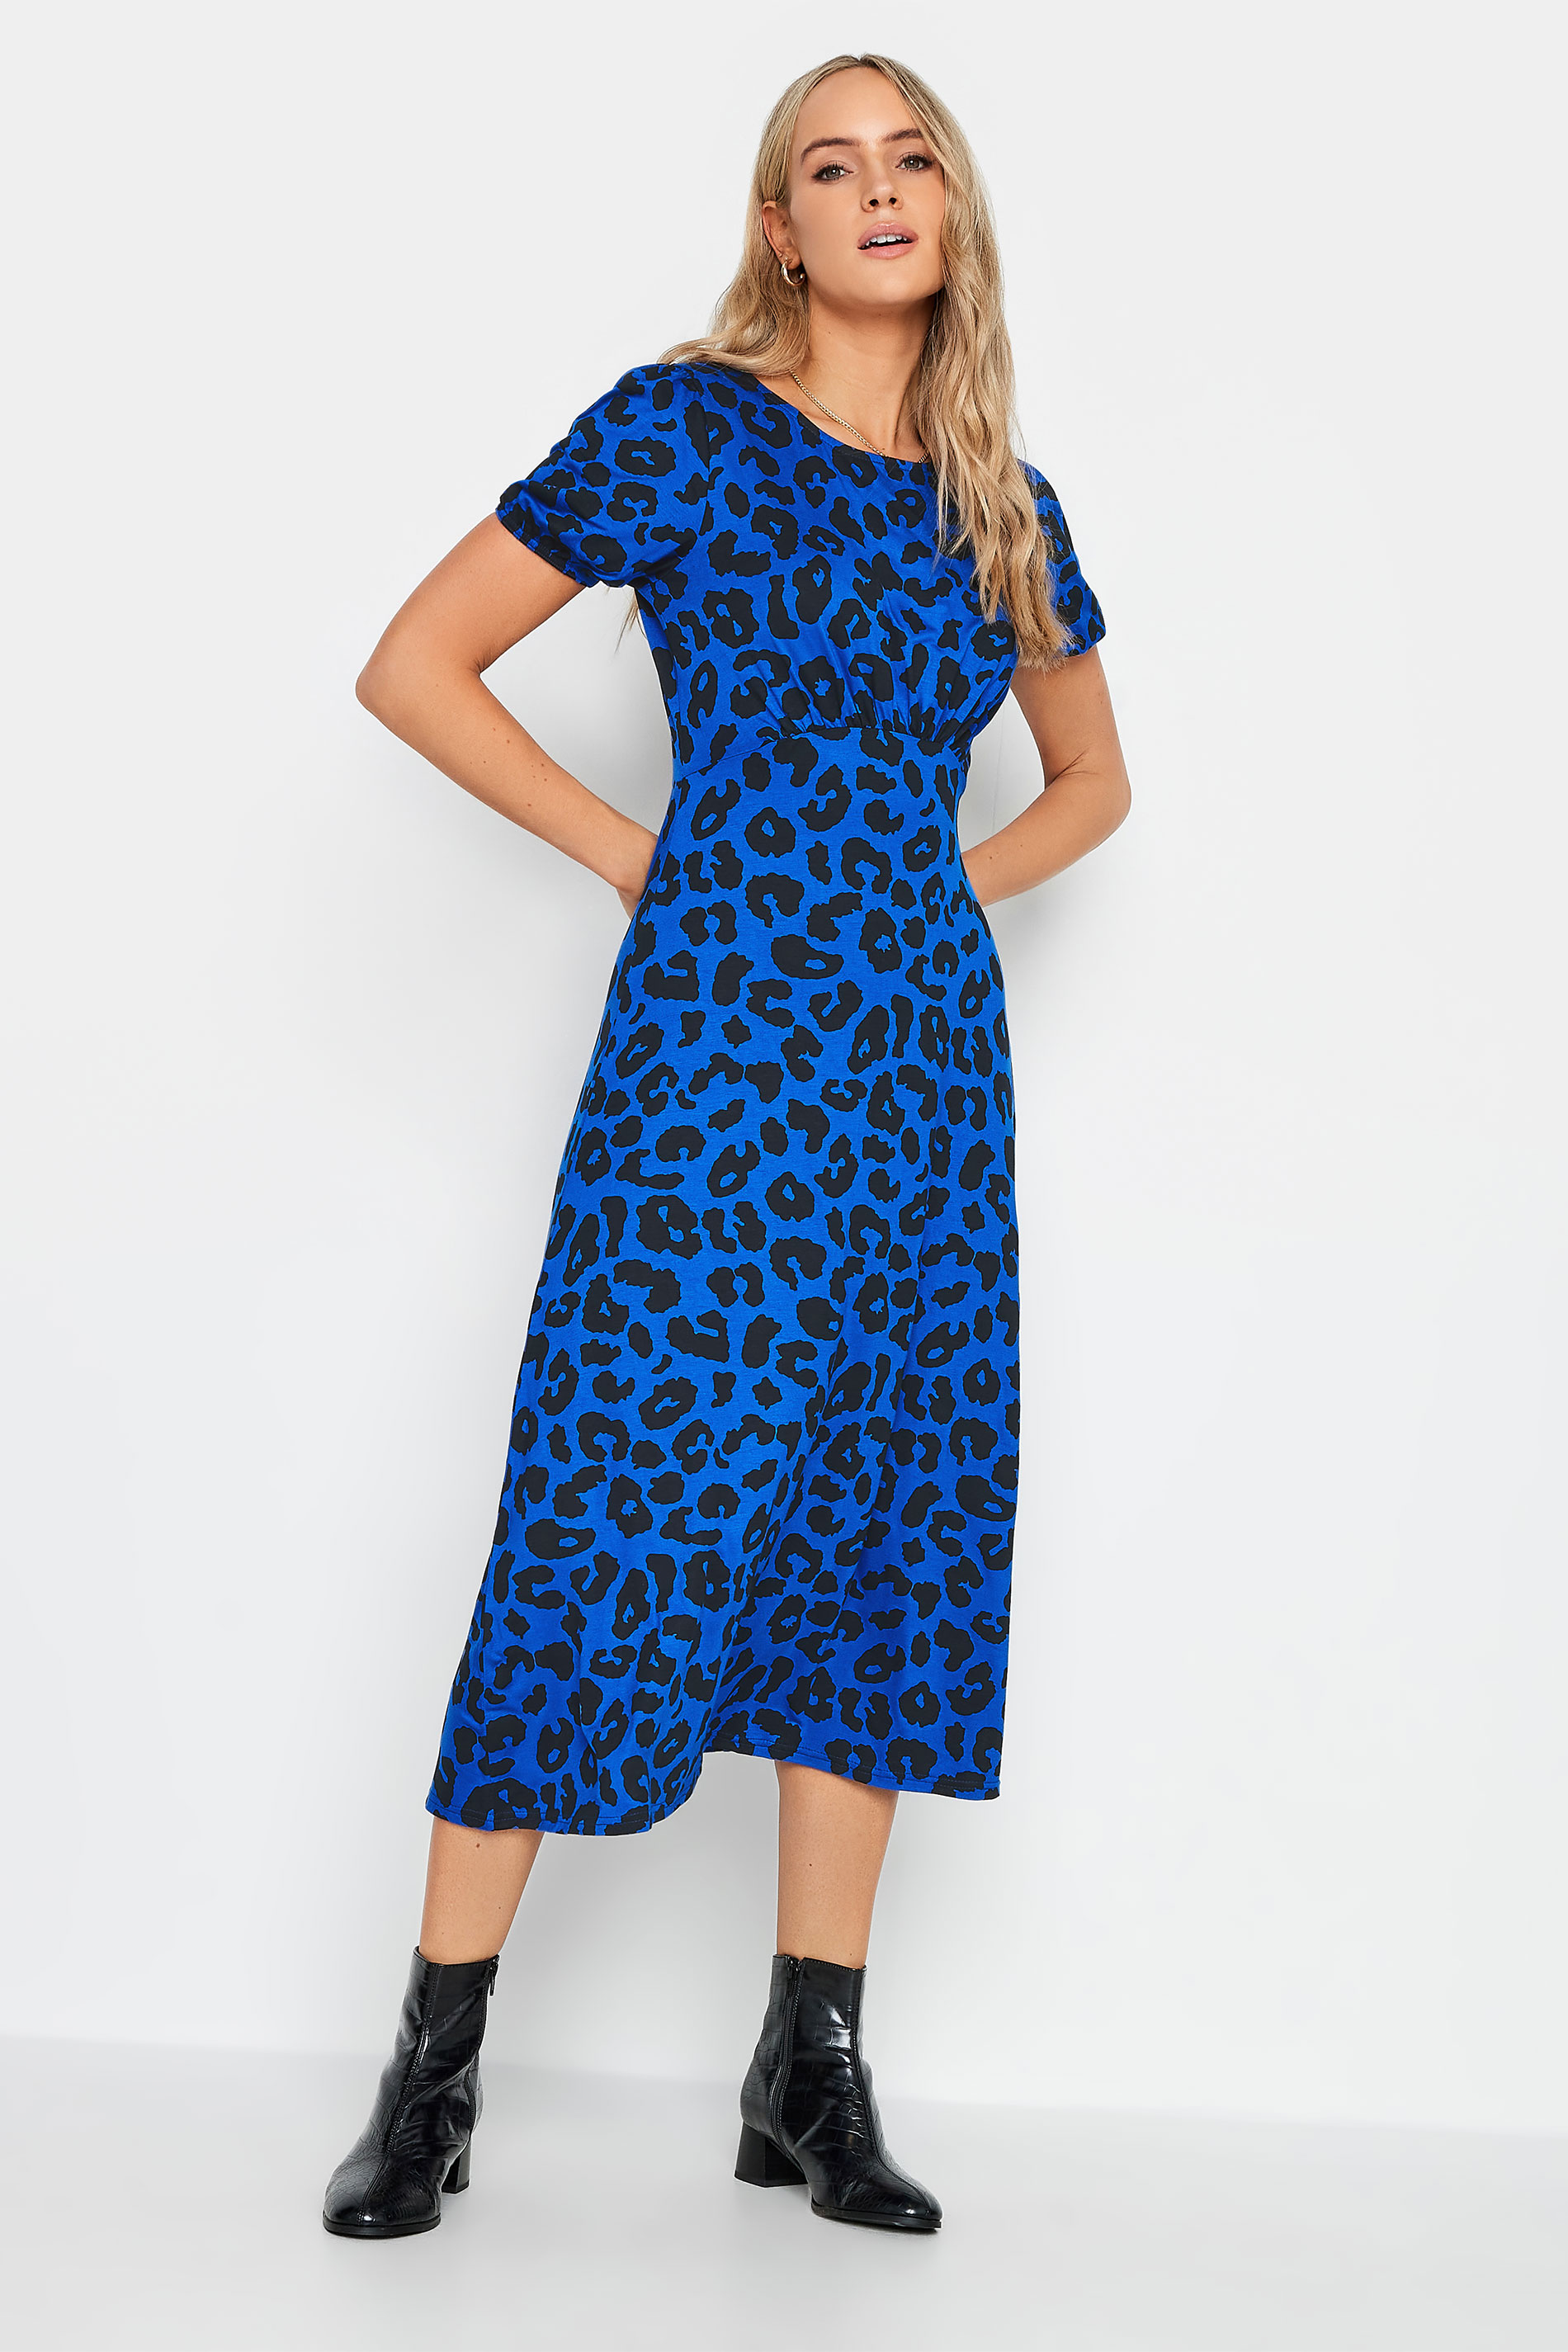 LTS Women's Tall Blue Animal Print Midi Tea Dress | Long Tall Sally 2